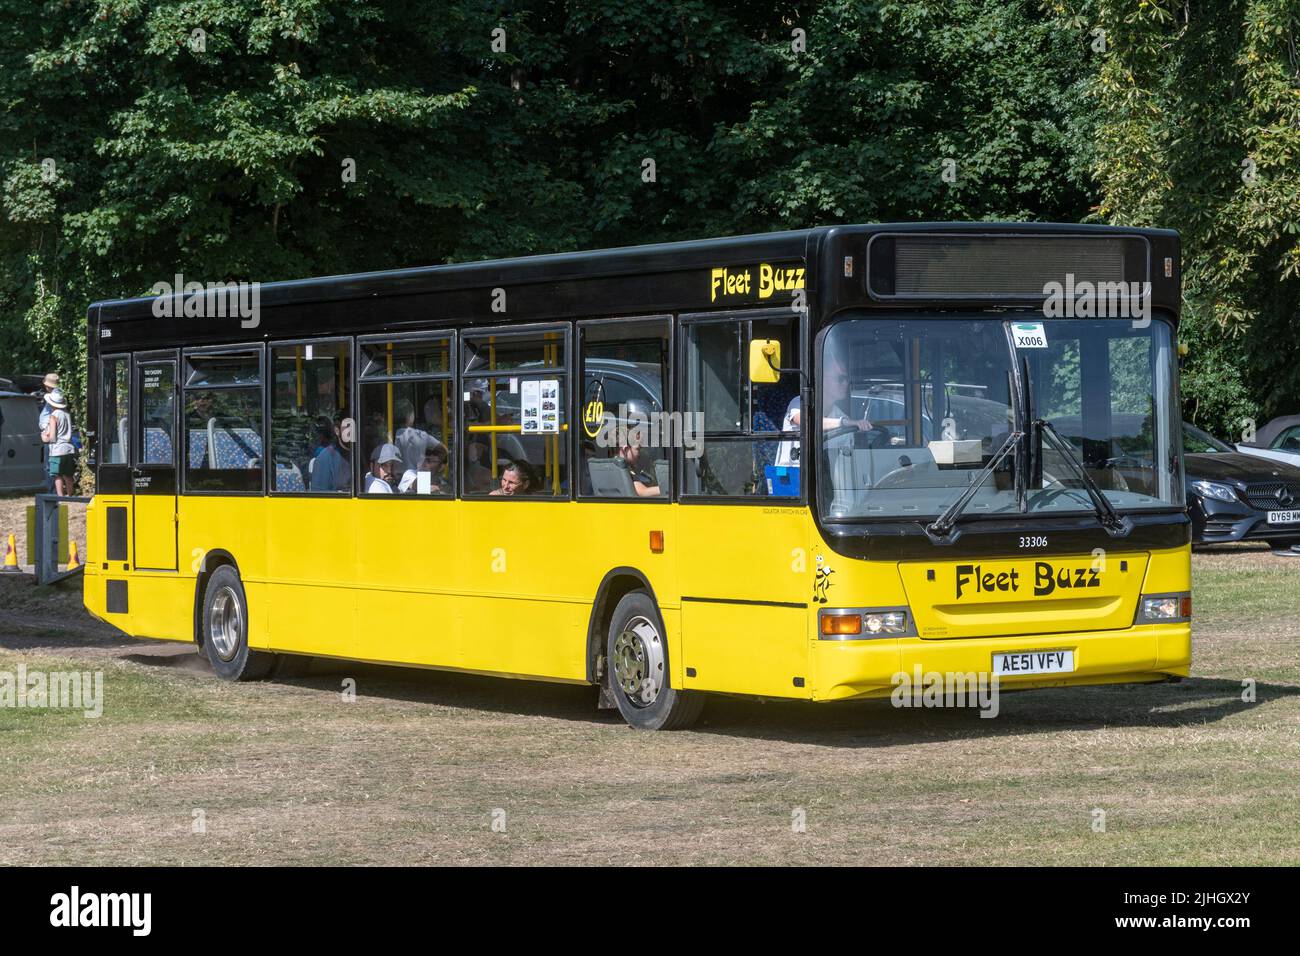 Fleet Buzz bus en colores amarillo brillante y negro, Hampshire, Inglaterra, Reino Unido, en un evento de transporte Foto de stock